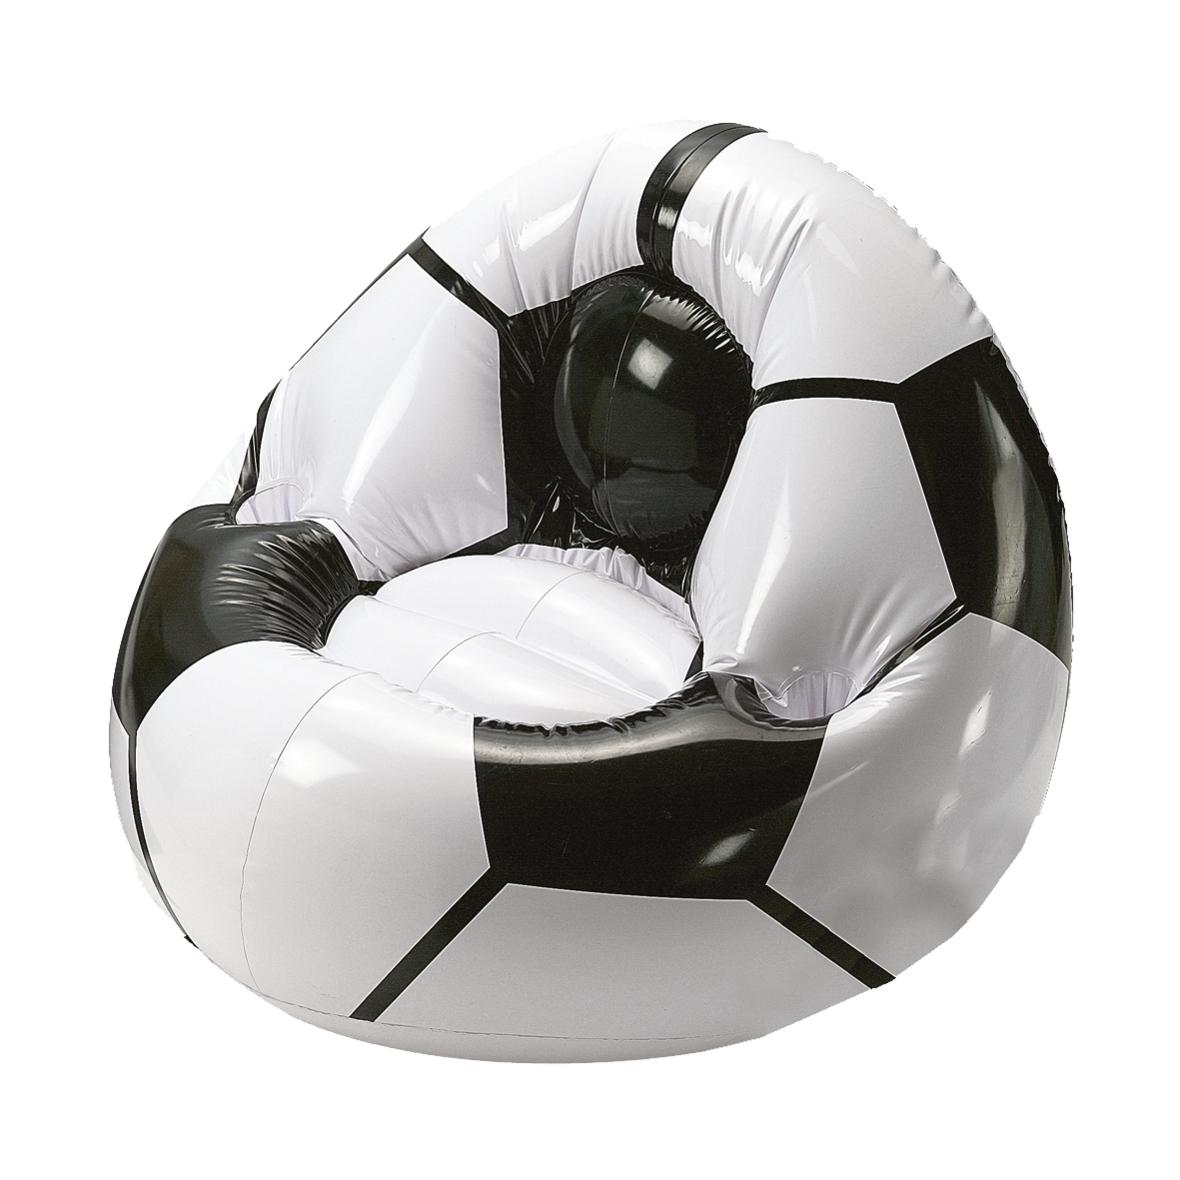 Silla inflable de fútbol con portavasos - Santa Eulalia de Gállego